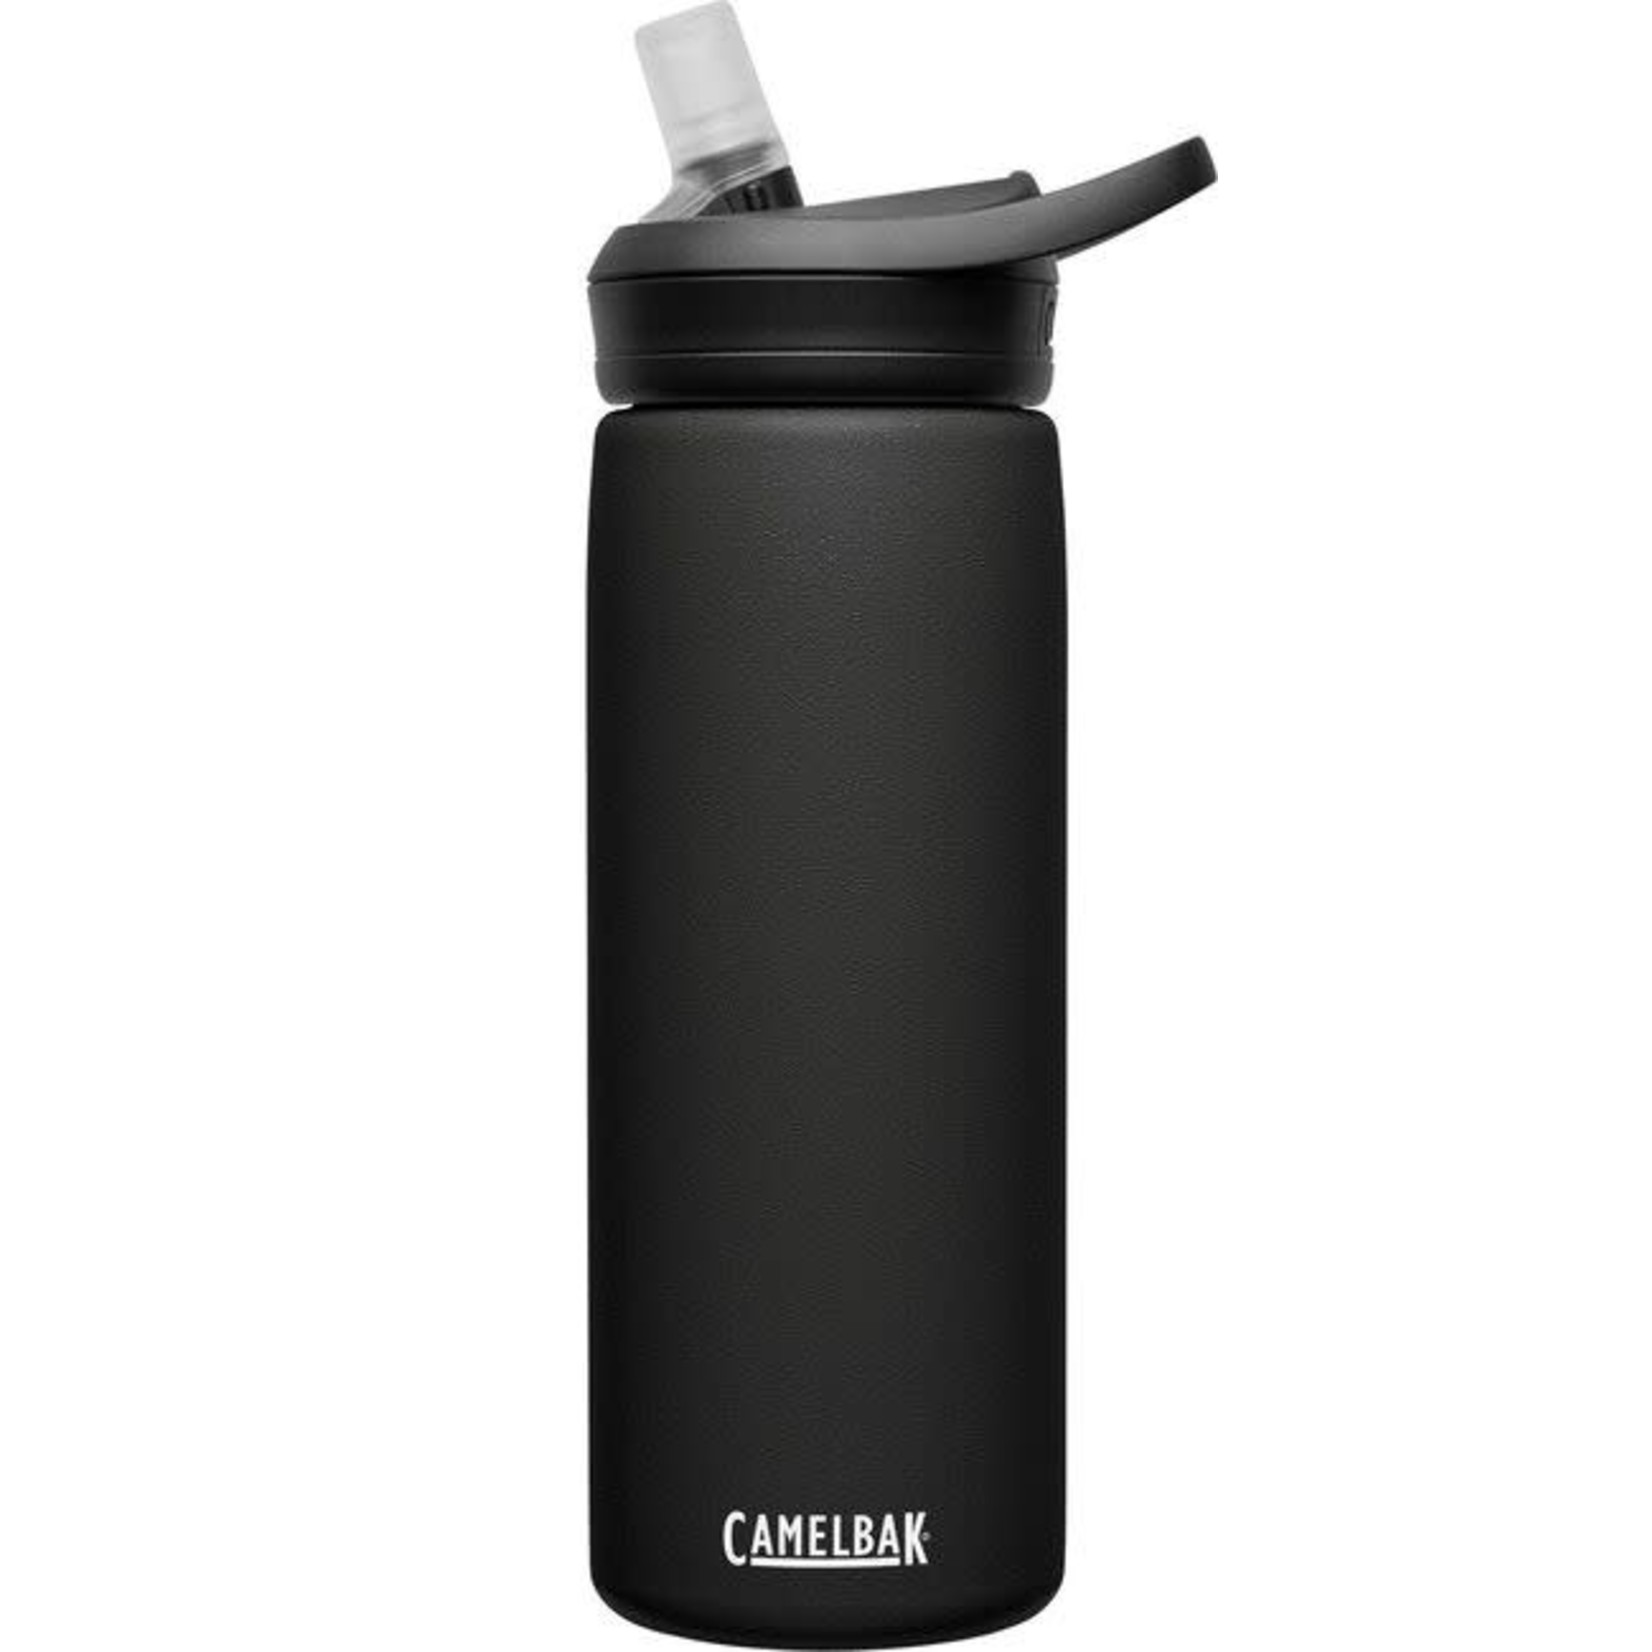 CAMELBAK Camelbak Eddy+ Insulated Stainless Steel Water bottle